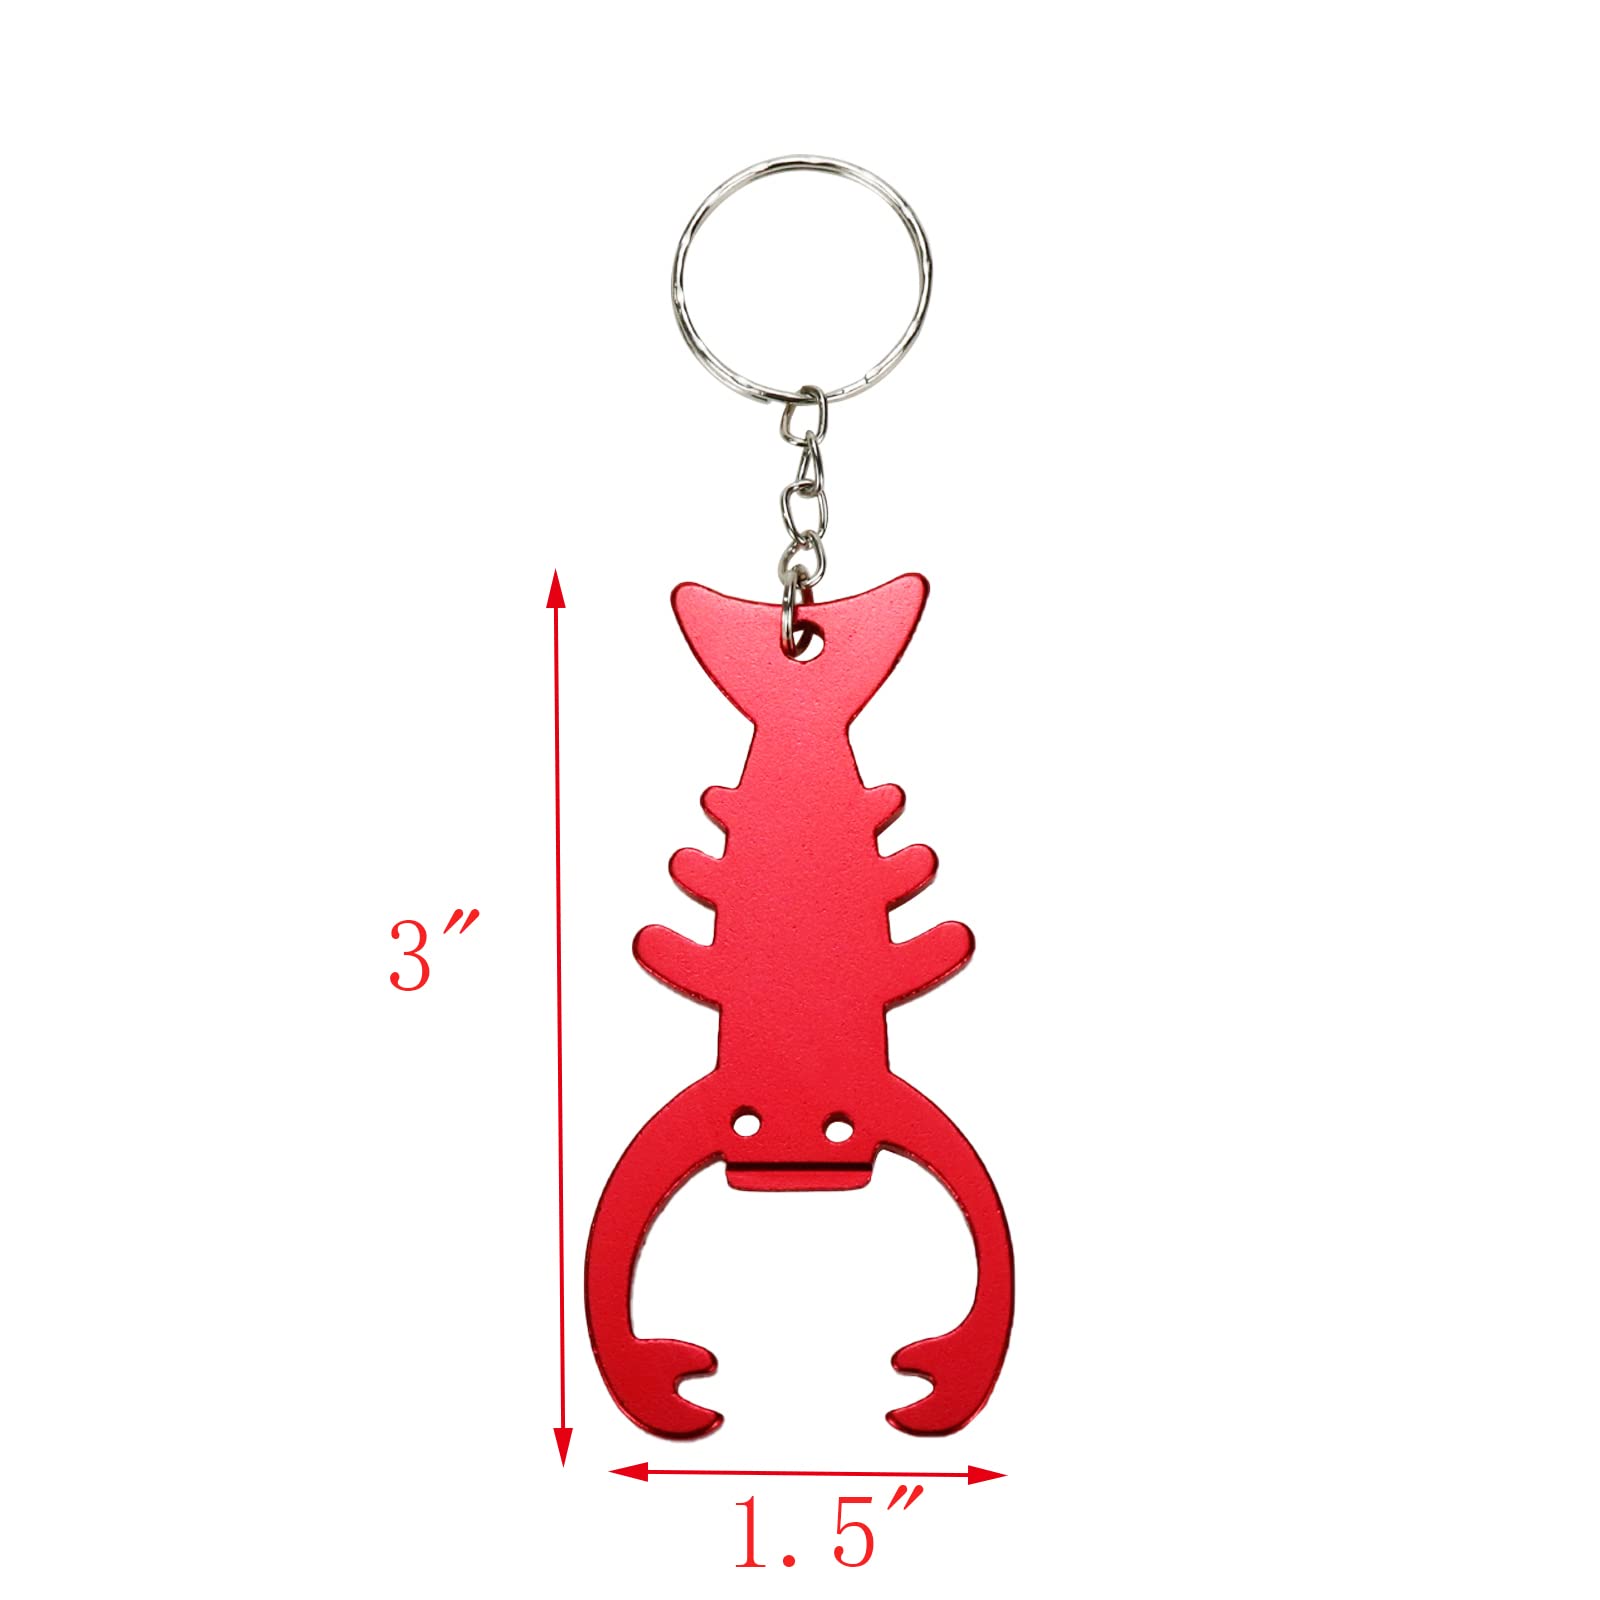 Sscon 10Pcs Bottle Openers Lobster Shape Keychain Key Tag Ring Bottle Openers Portable Bottle Openers, Red